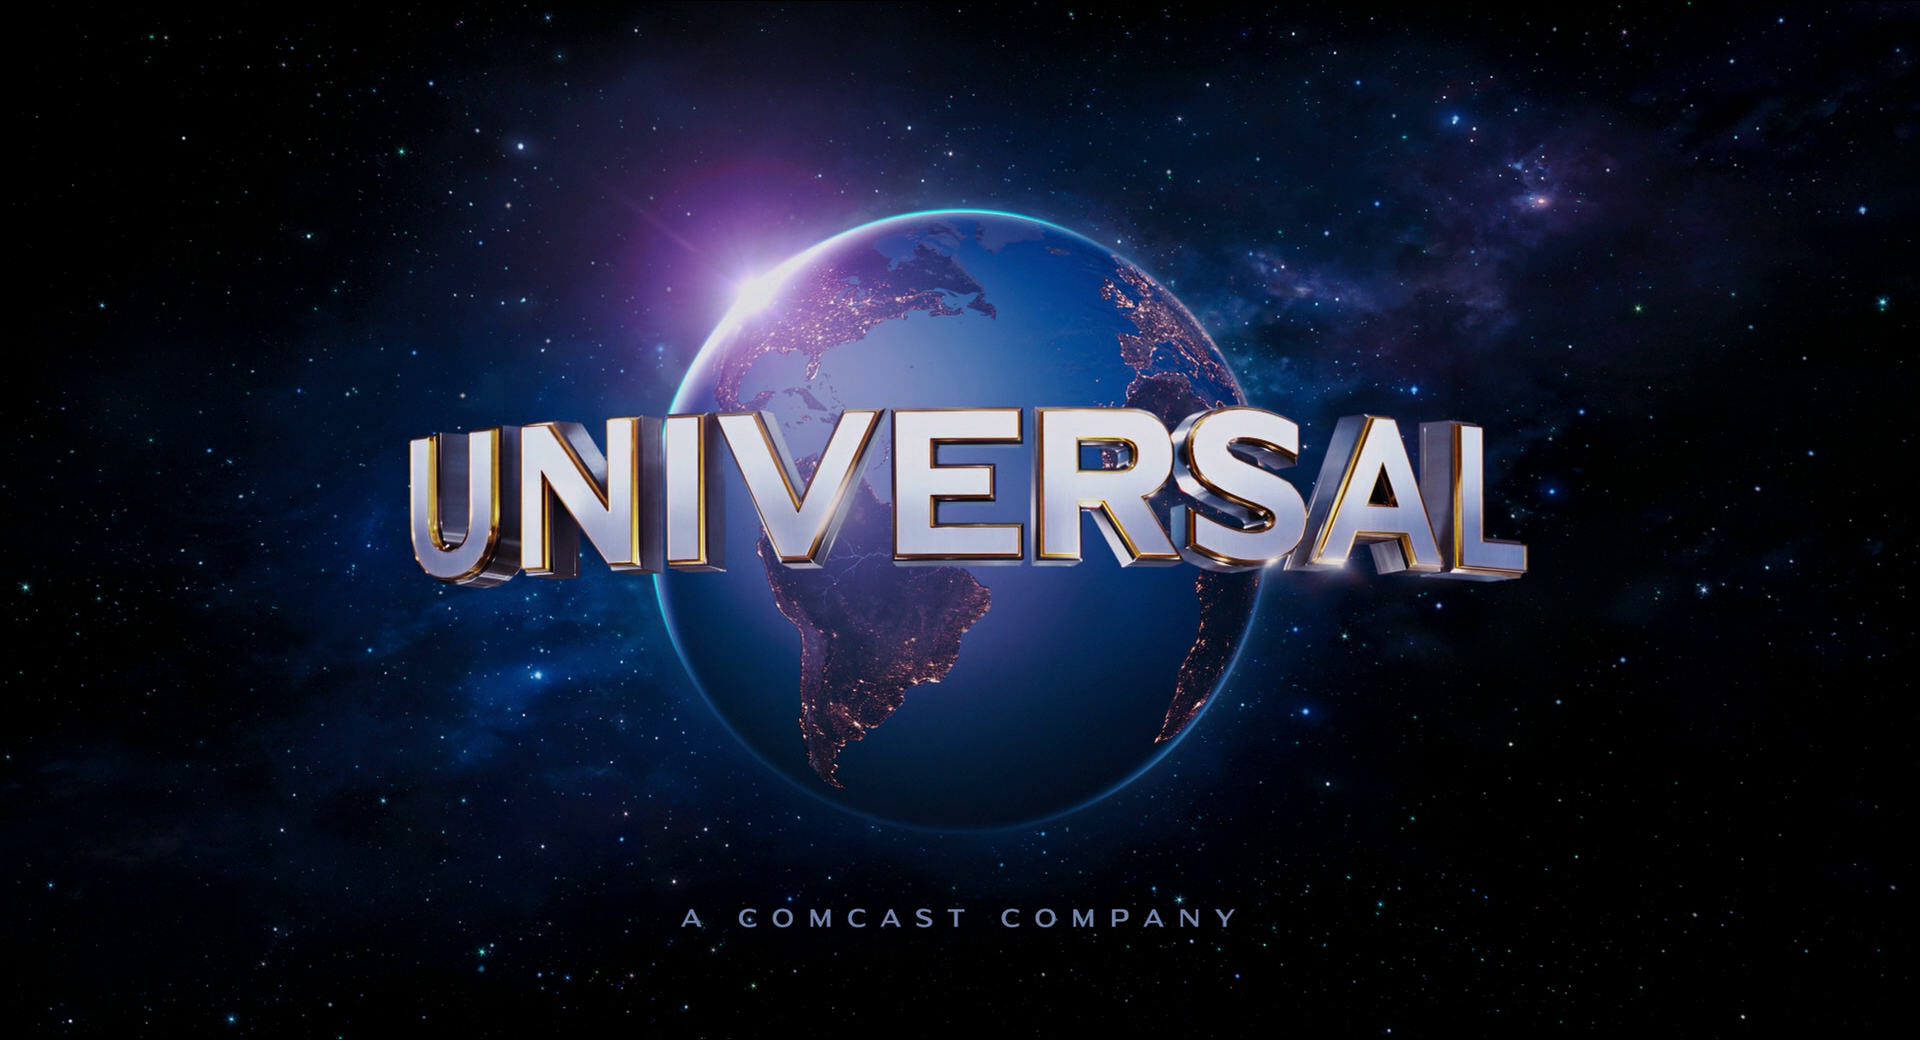 Universal Studios | Dreamworks Animation Wiki | FANDOM powered by Wikia